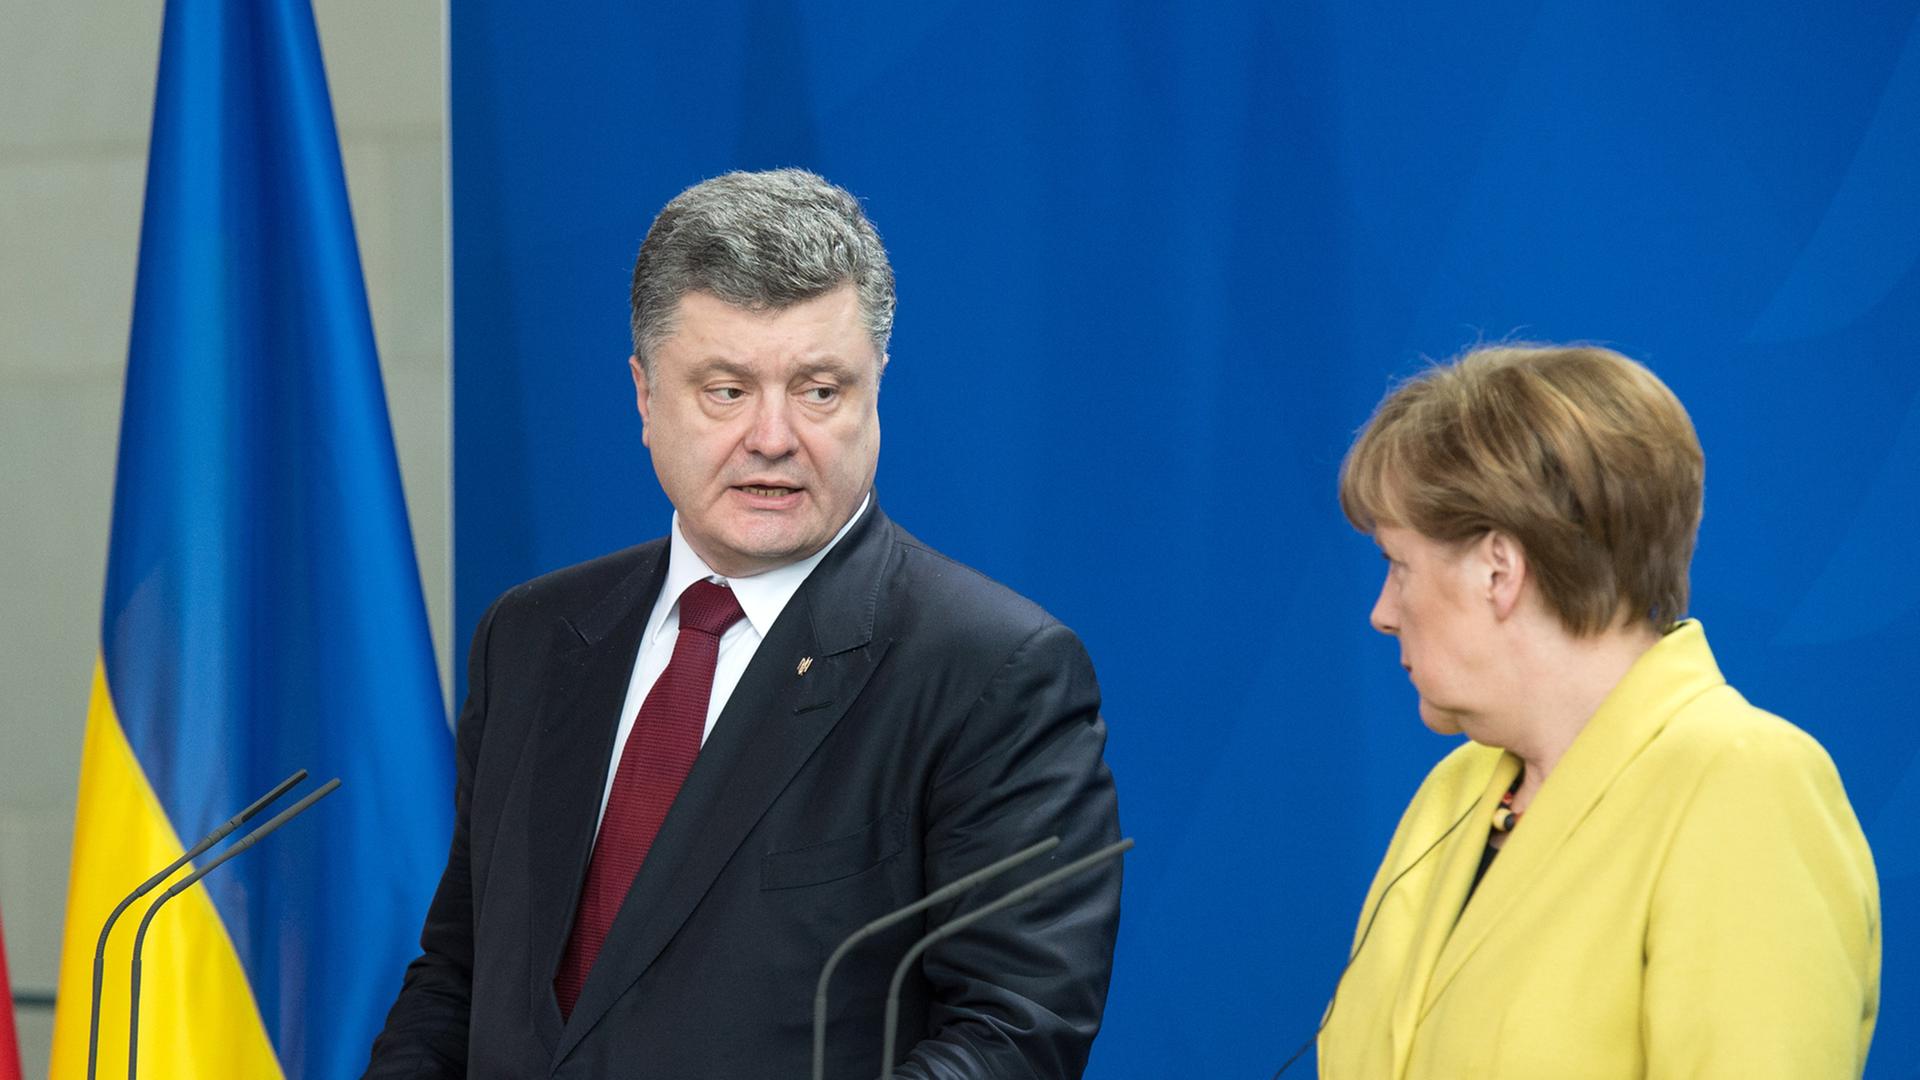 Der ukrainische Präsident Petro Poroschenko (li.) und Bundeskanzlerin Angela Merkel bei einer Pressekonferenz in Berlin.